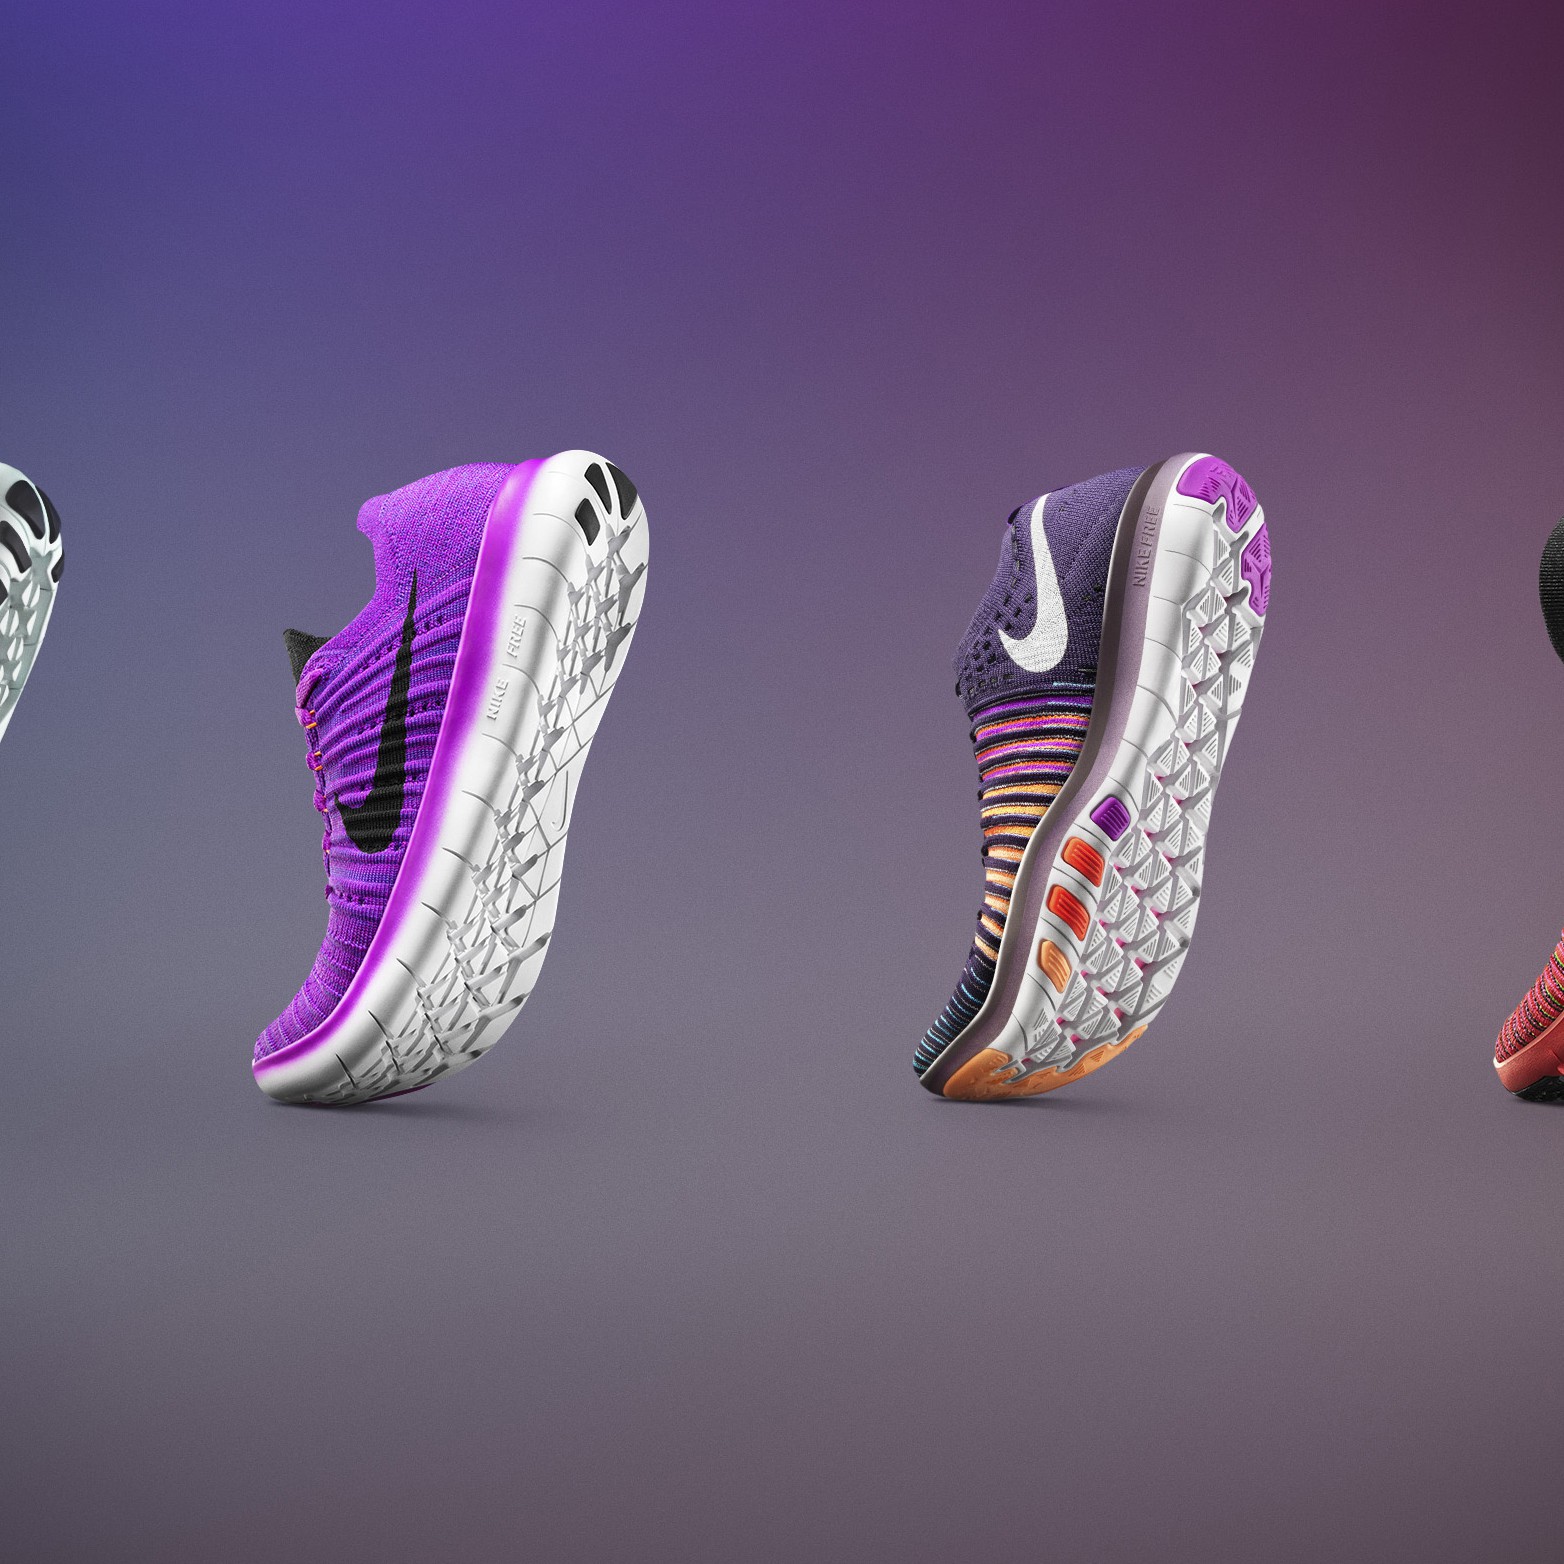 Новое поколение Nike free